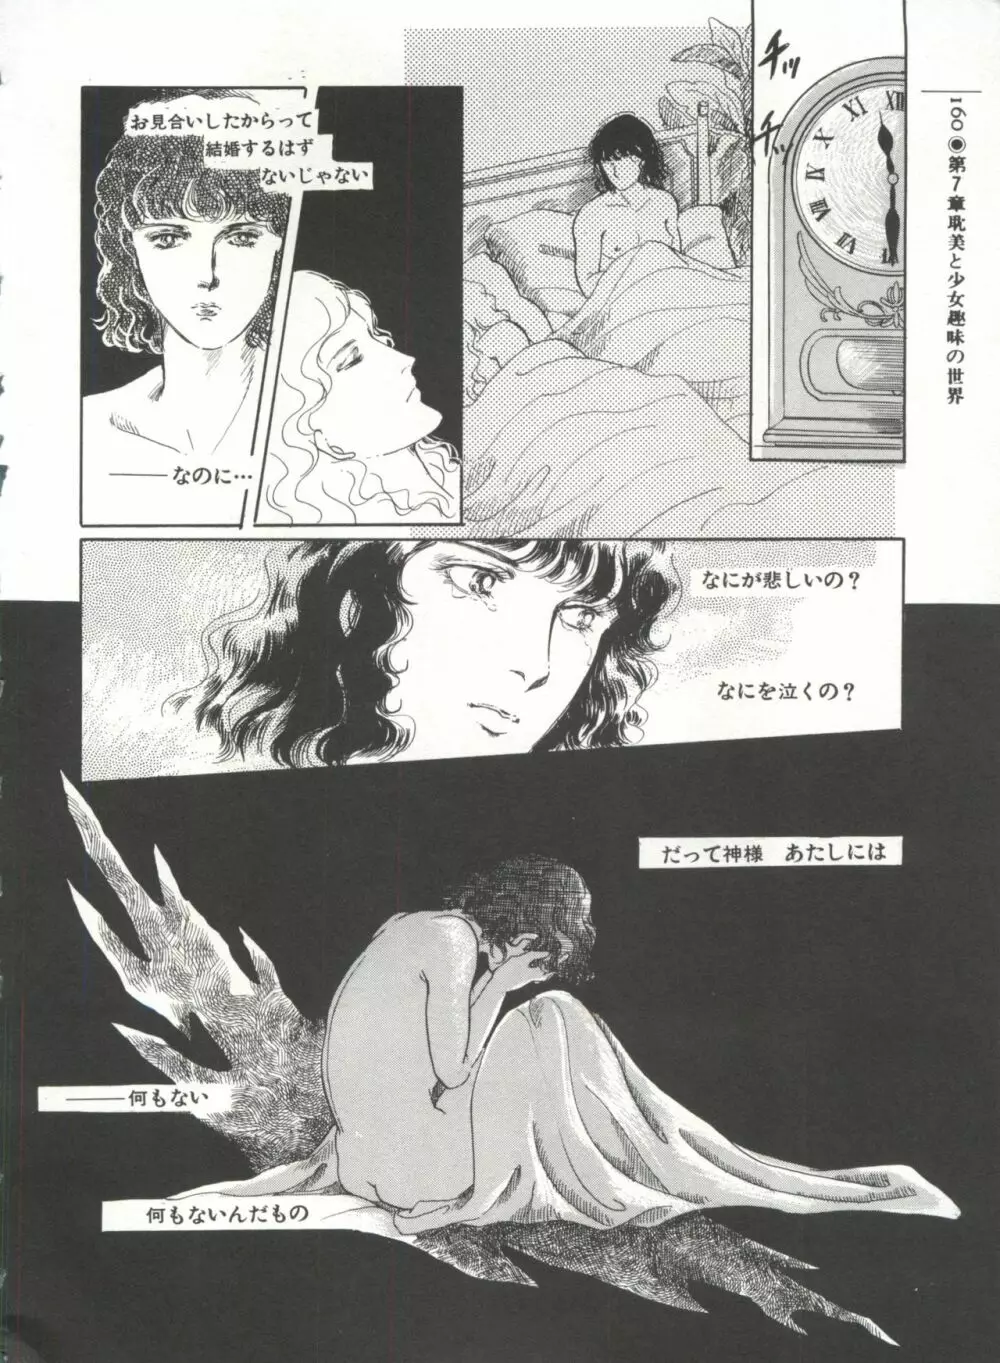 [Anthology] 美少女症候群(2) Lolita syndrome (よろず) 163ページ